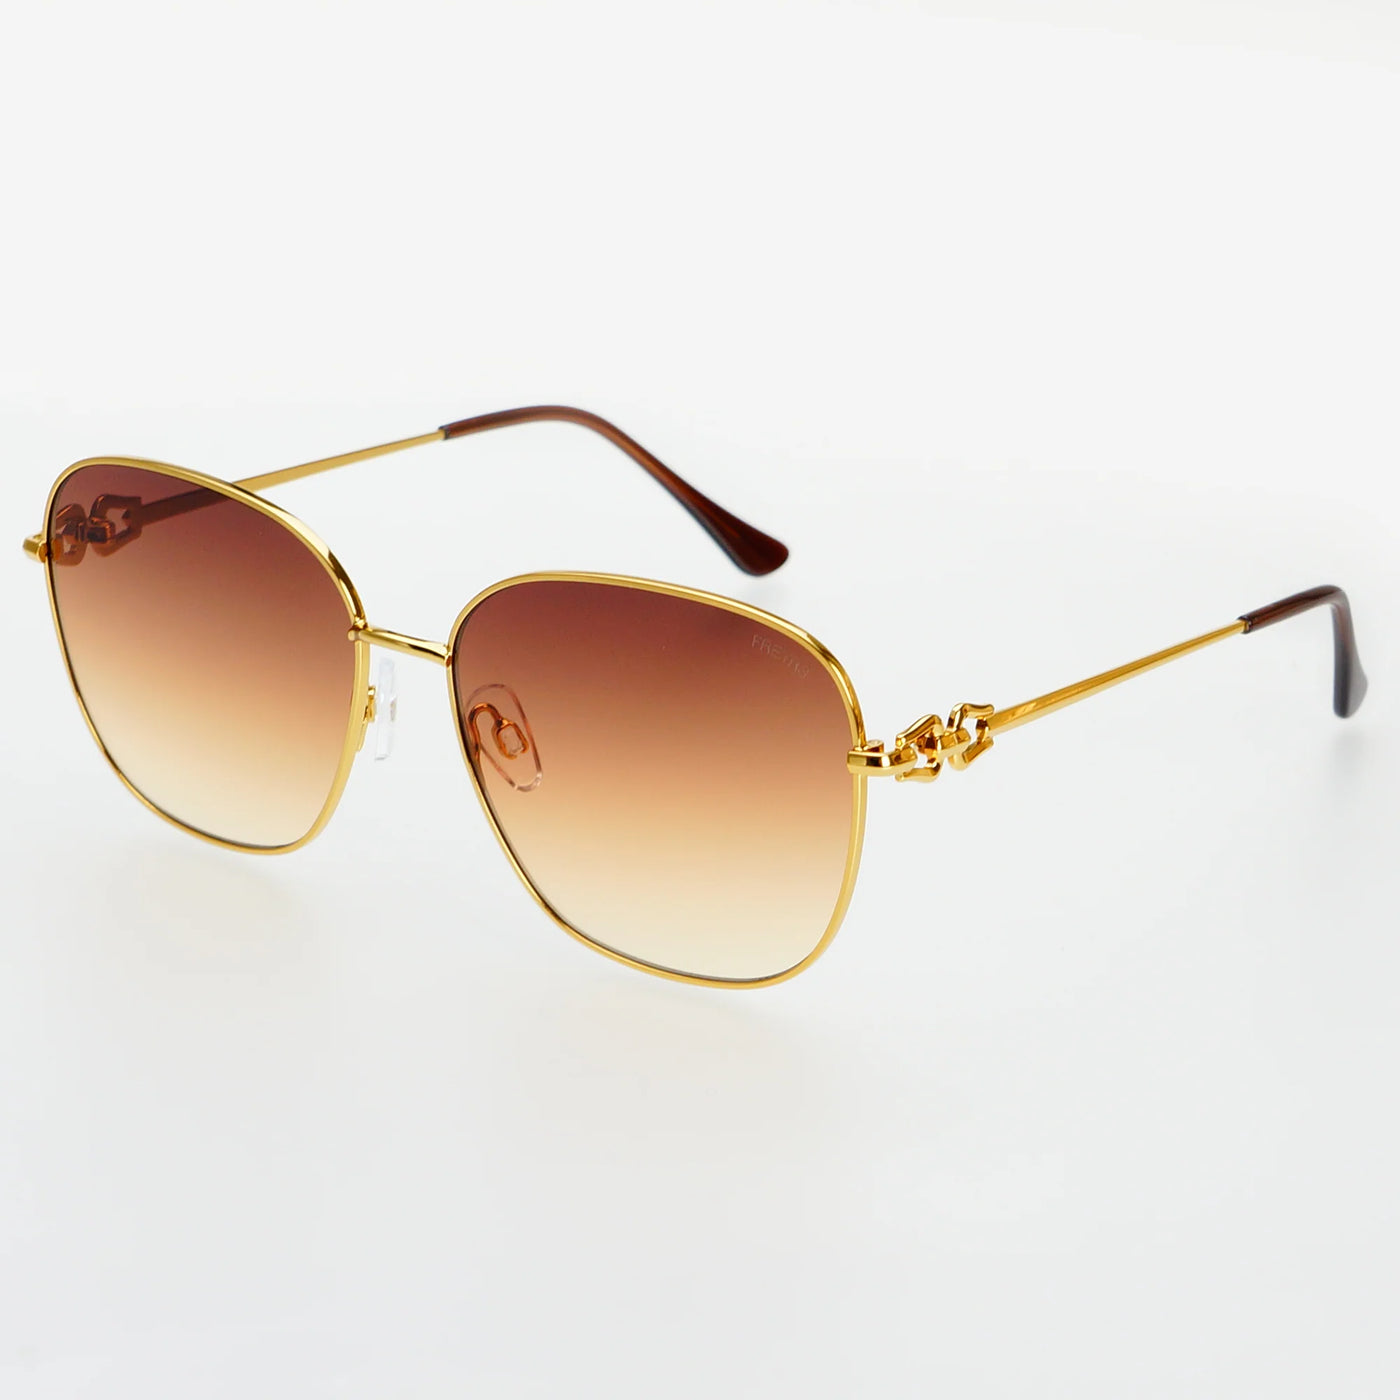 Lea Sunglasses - Gold/Brown